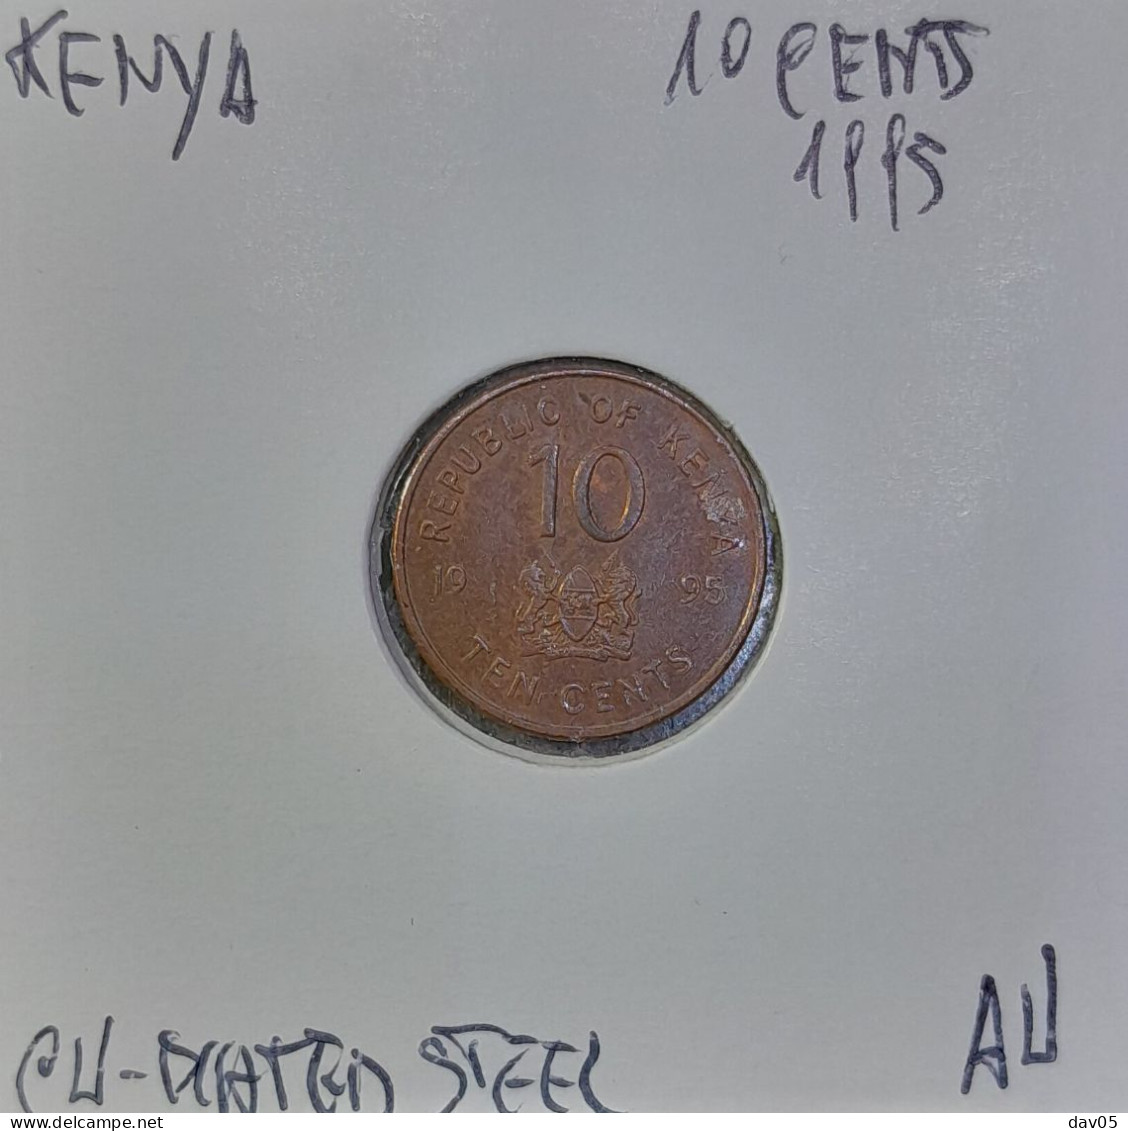 KENYA -10 CENTS 1995 - AU/SUP - Kenya